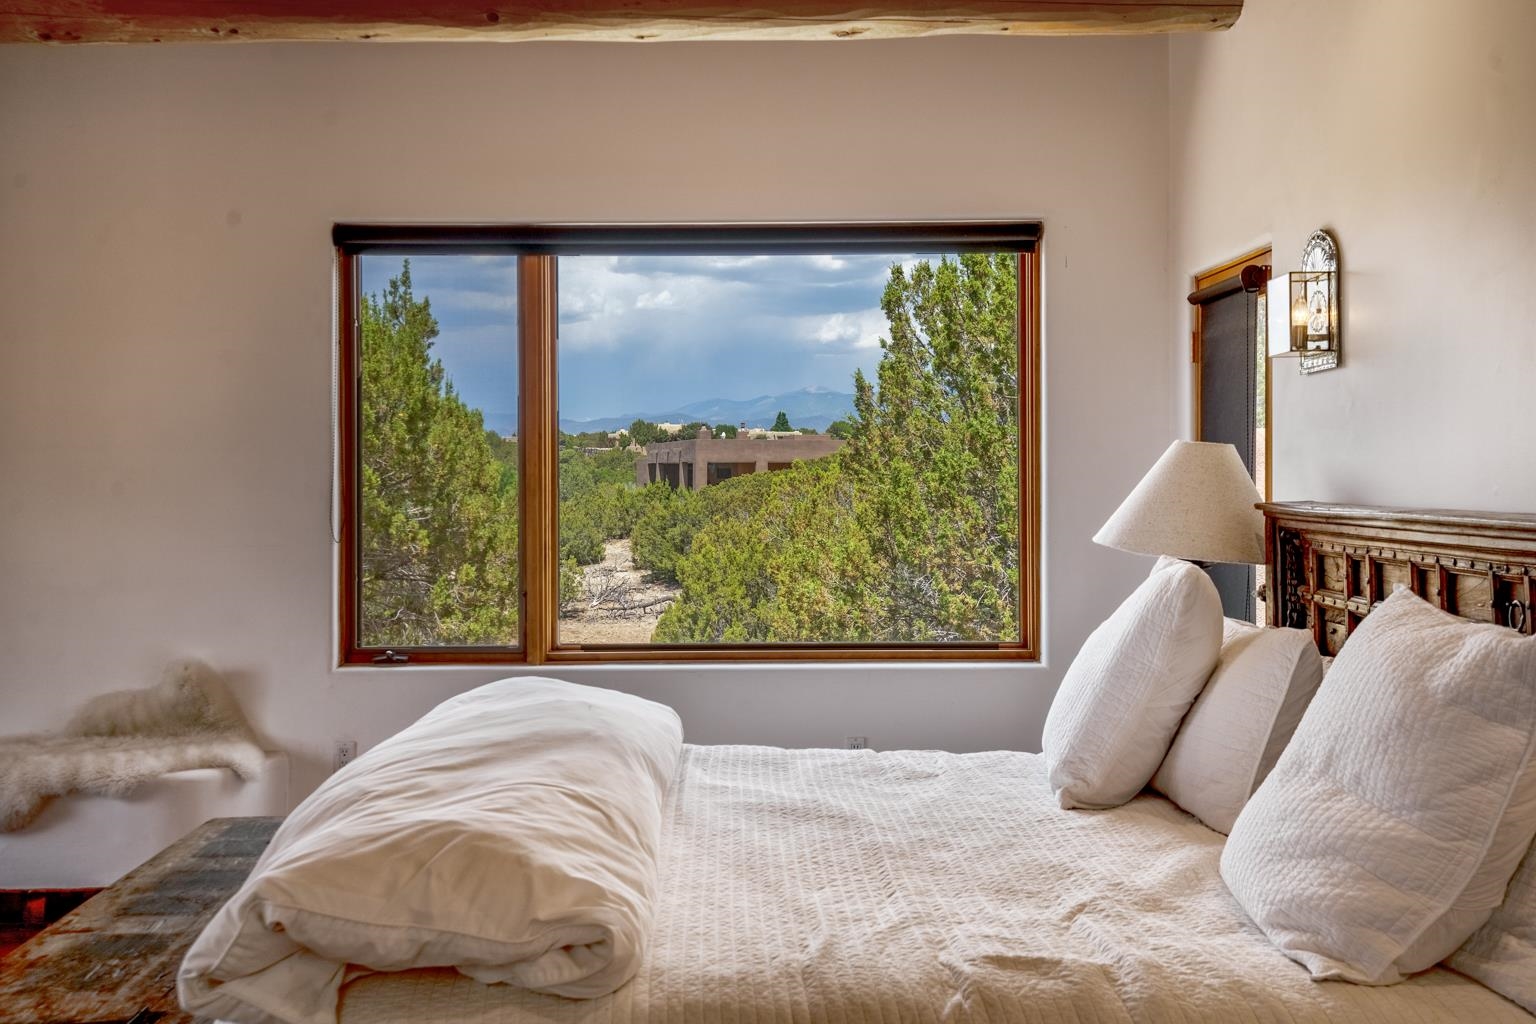 10 Sierra Lavanda, Santa Fe, New Mexico 87507, 3 Bedrooms Bedrooms, ,2 BathroomsBathrooms,Residential,For Sale,10 Sierra Lavanda,202202241